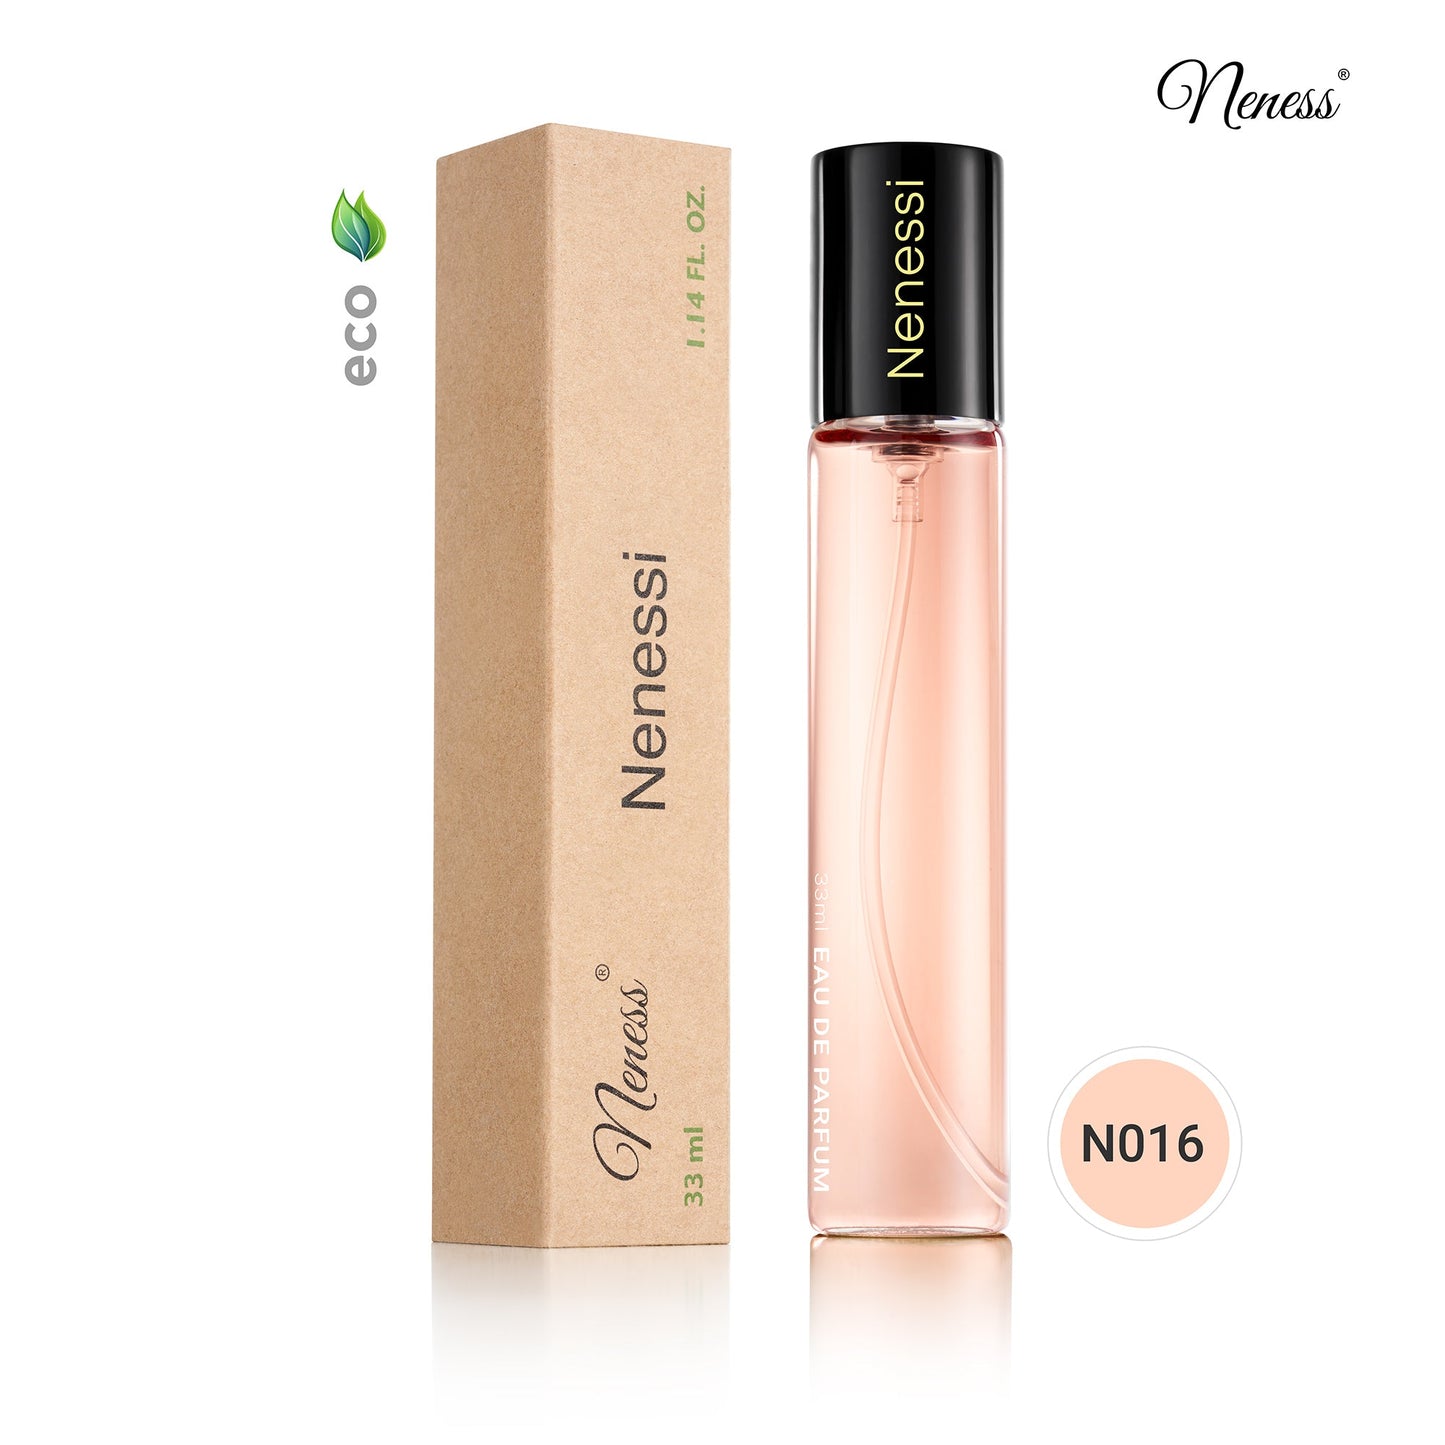 N016. Nenessi - 33 ml - Parfum Pour Femme